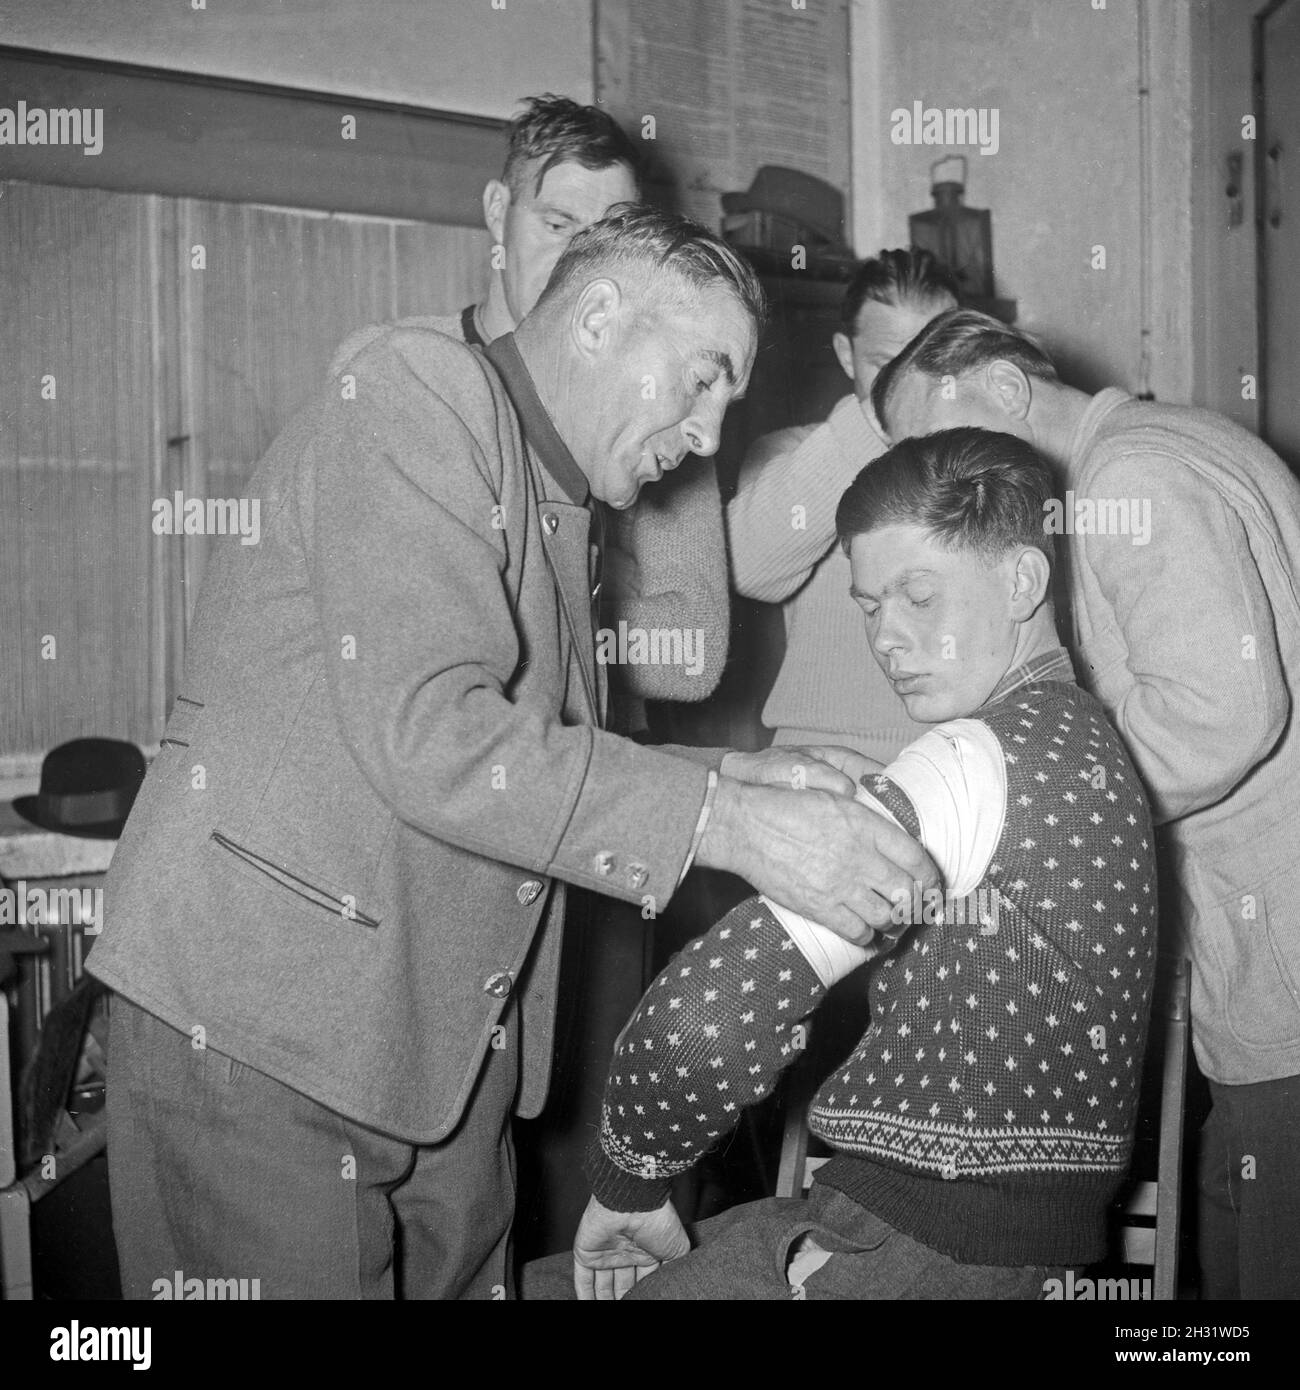 Männer legen einen Verband in einem Erste Hilfe Kurs an, Deutschland 1953.Les hommes apprennent à mettre en place un bandage dans une leçon de premiers soins, Allemagne 1953. Banque D'Images